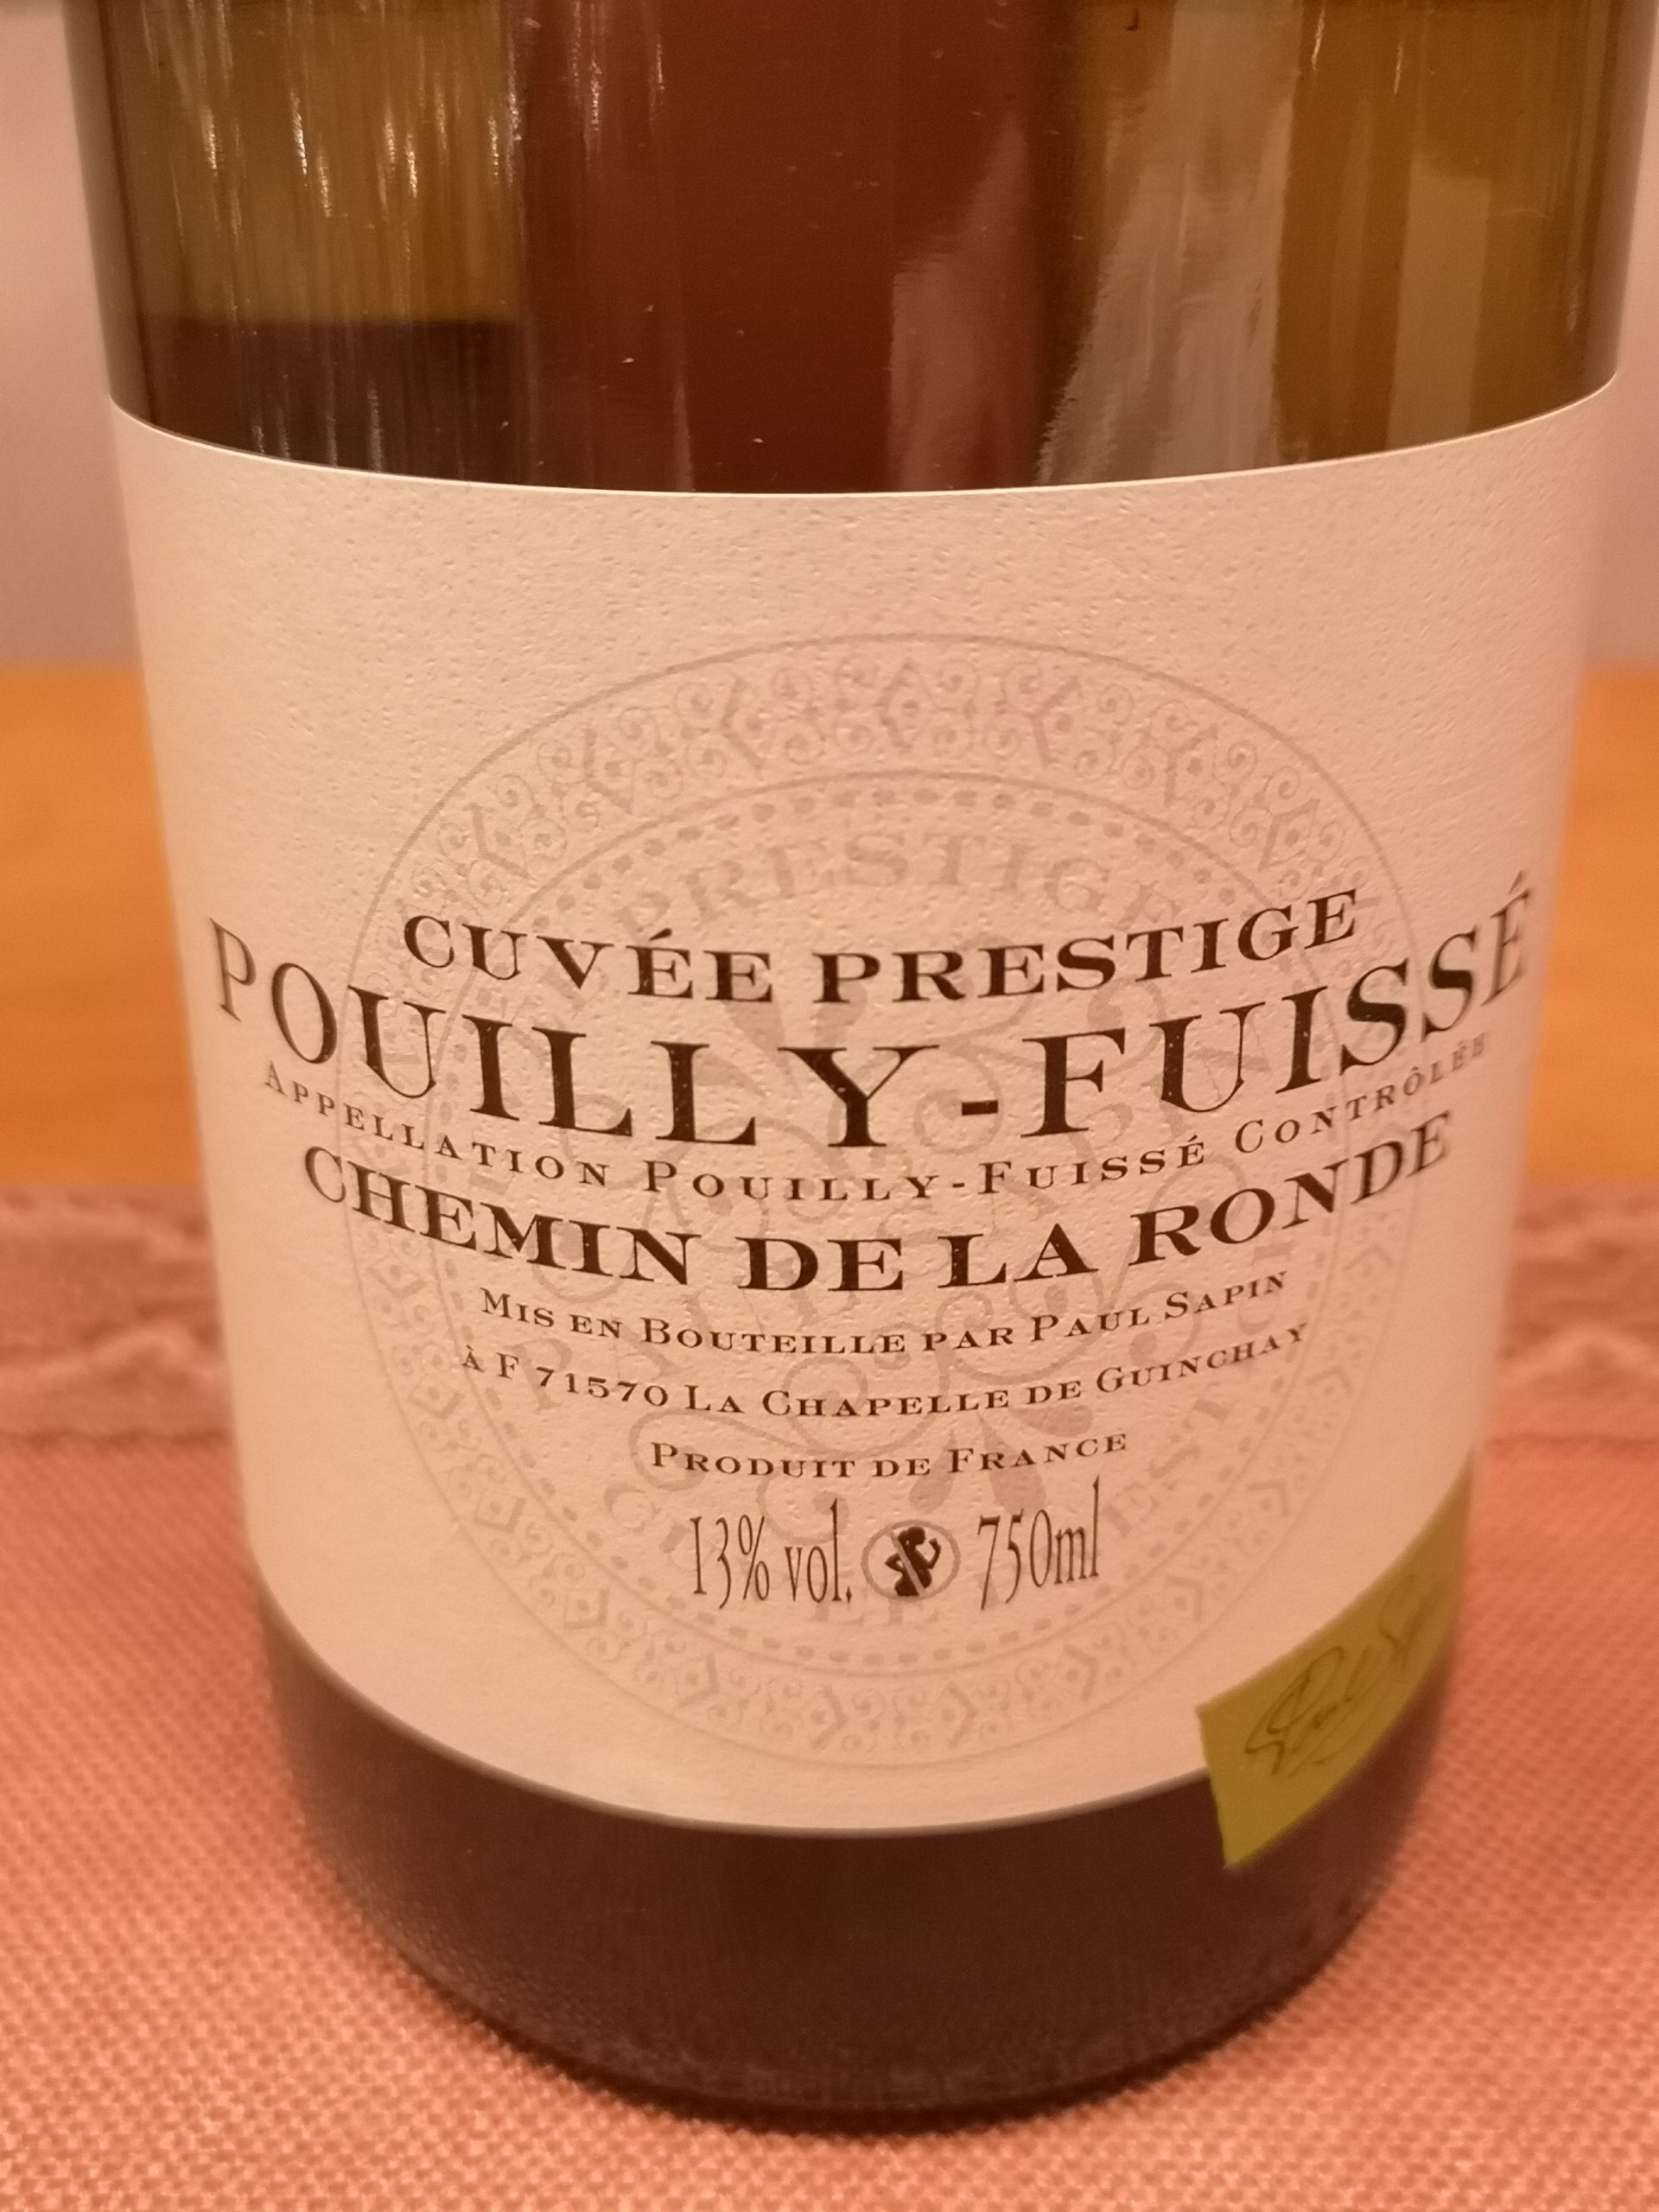 2012 Pouilly-Fuissé Cuvée Prestige Chemin de la Ronde | Paul Sapin